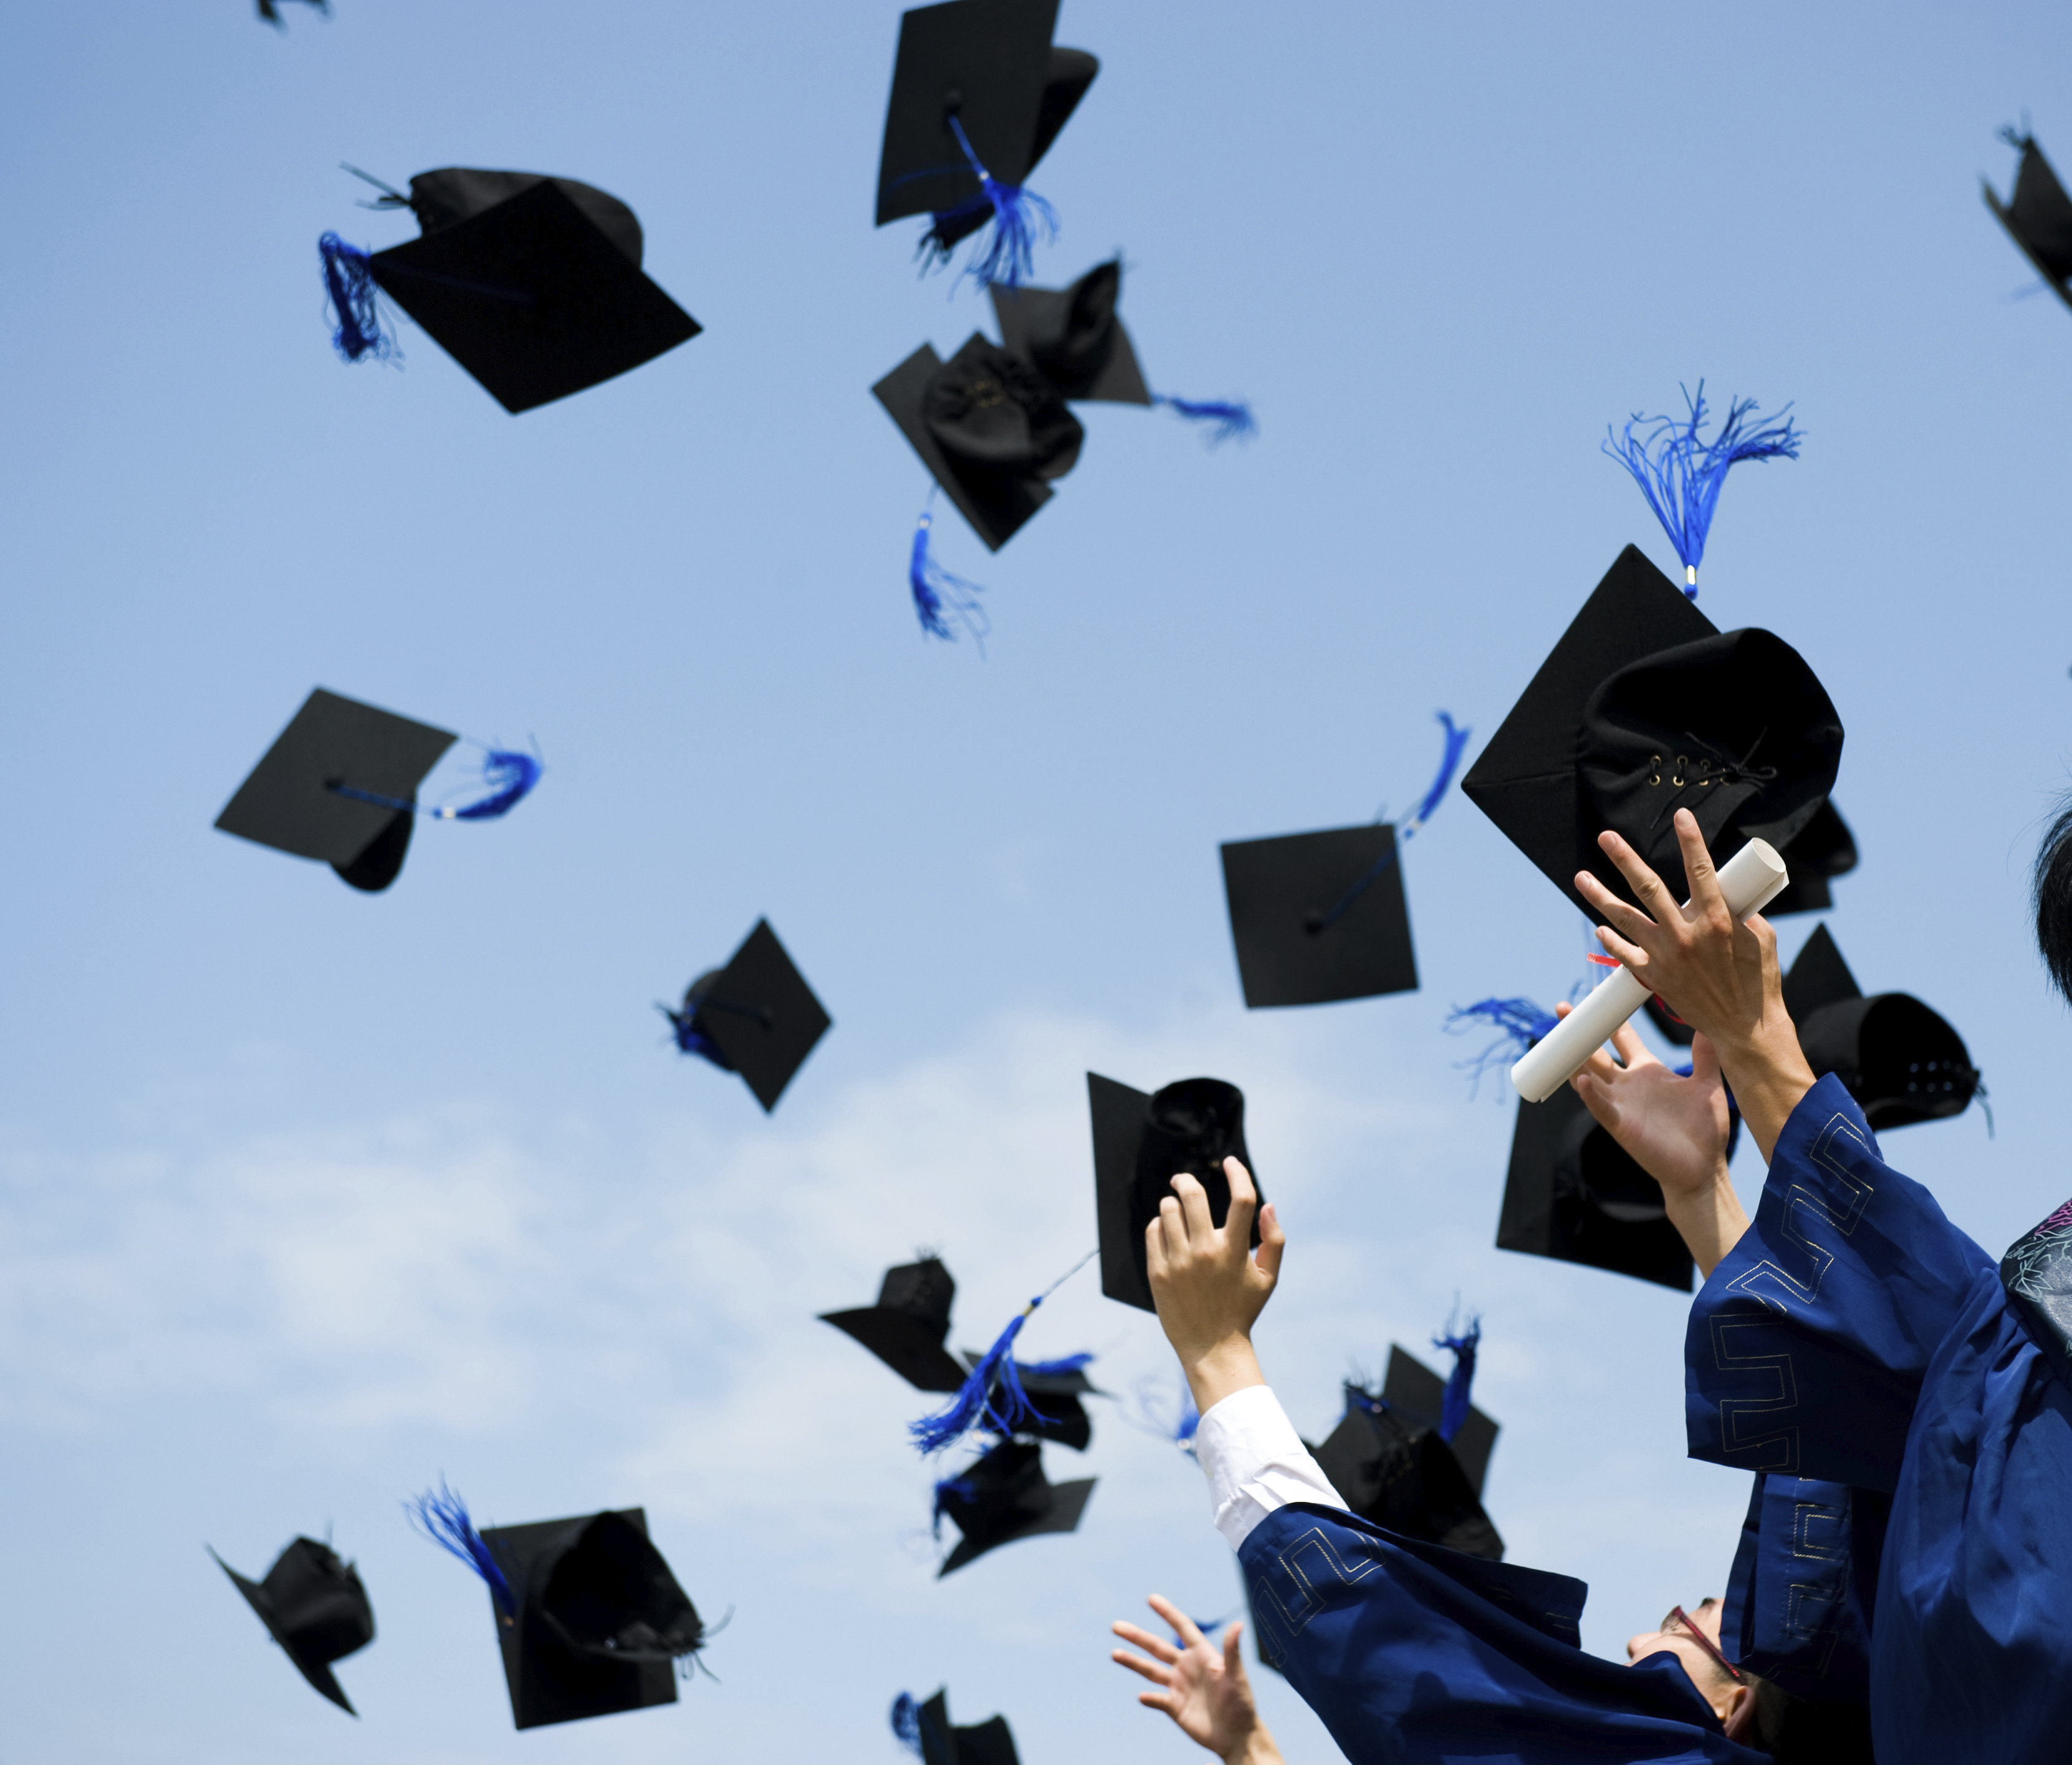 graduation caps thrown in air